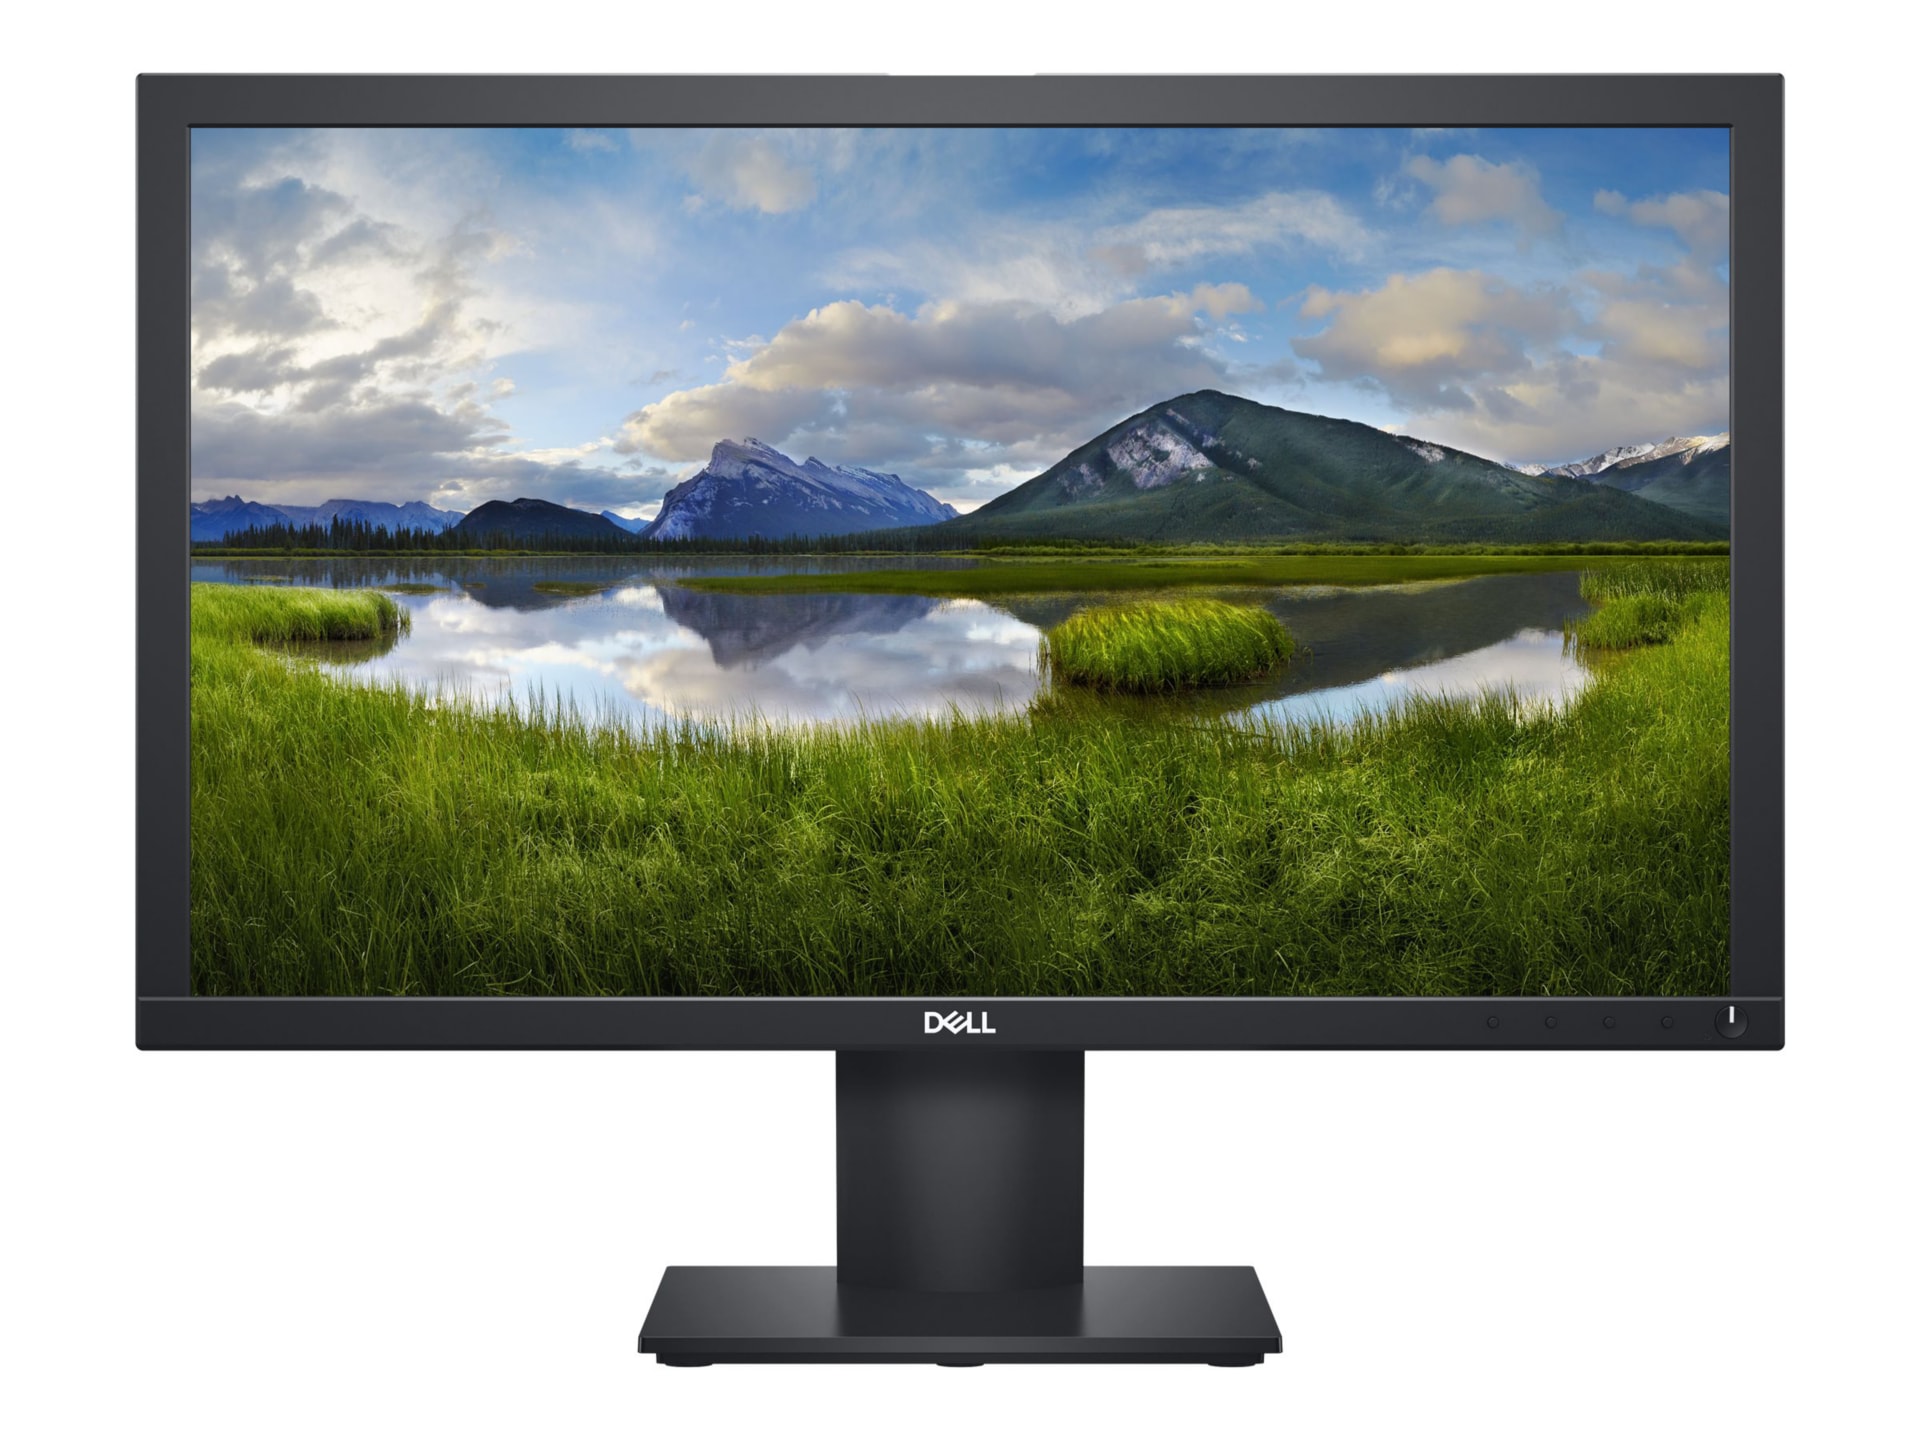 Krijt Langskomen knoop Dell E2220H - LED monitor - Full HD (1080p) - 22" - DELL-E2220H - Computer  Monitors - CDW.com